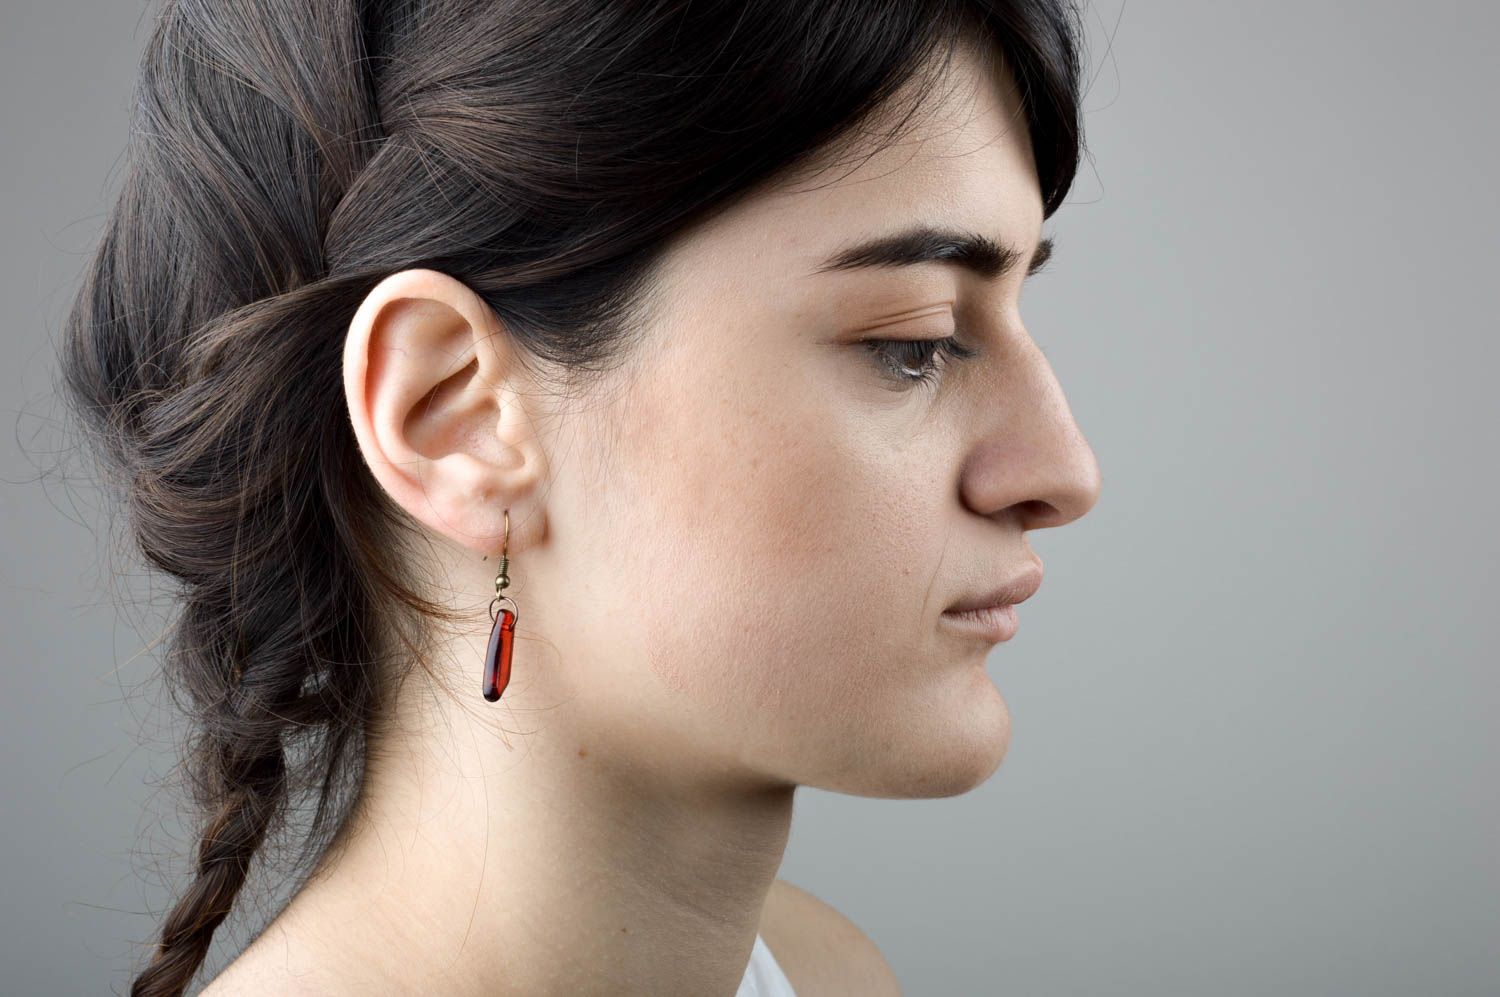 Handmade dangling earrings jewelry made of glass designer feminine earrings photo 4